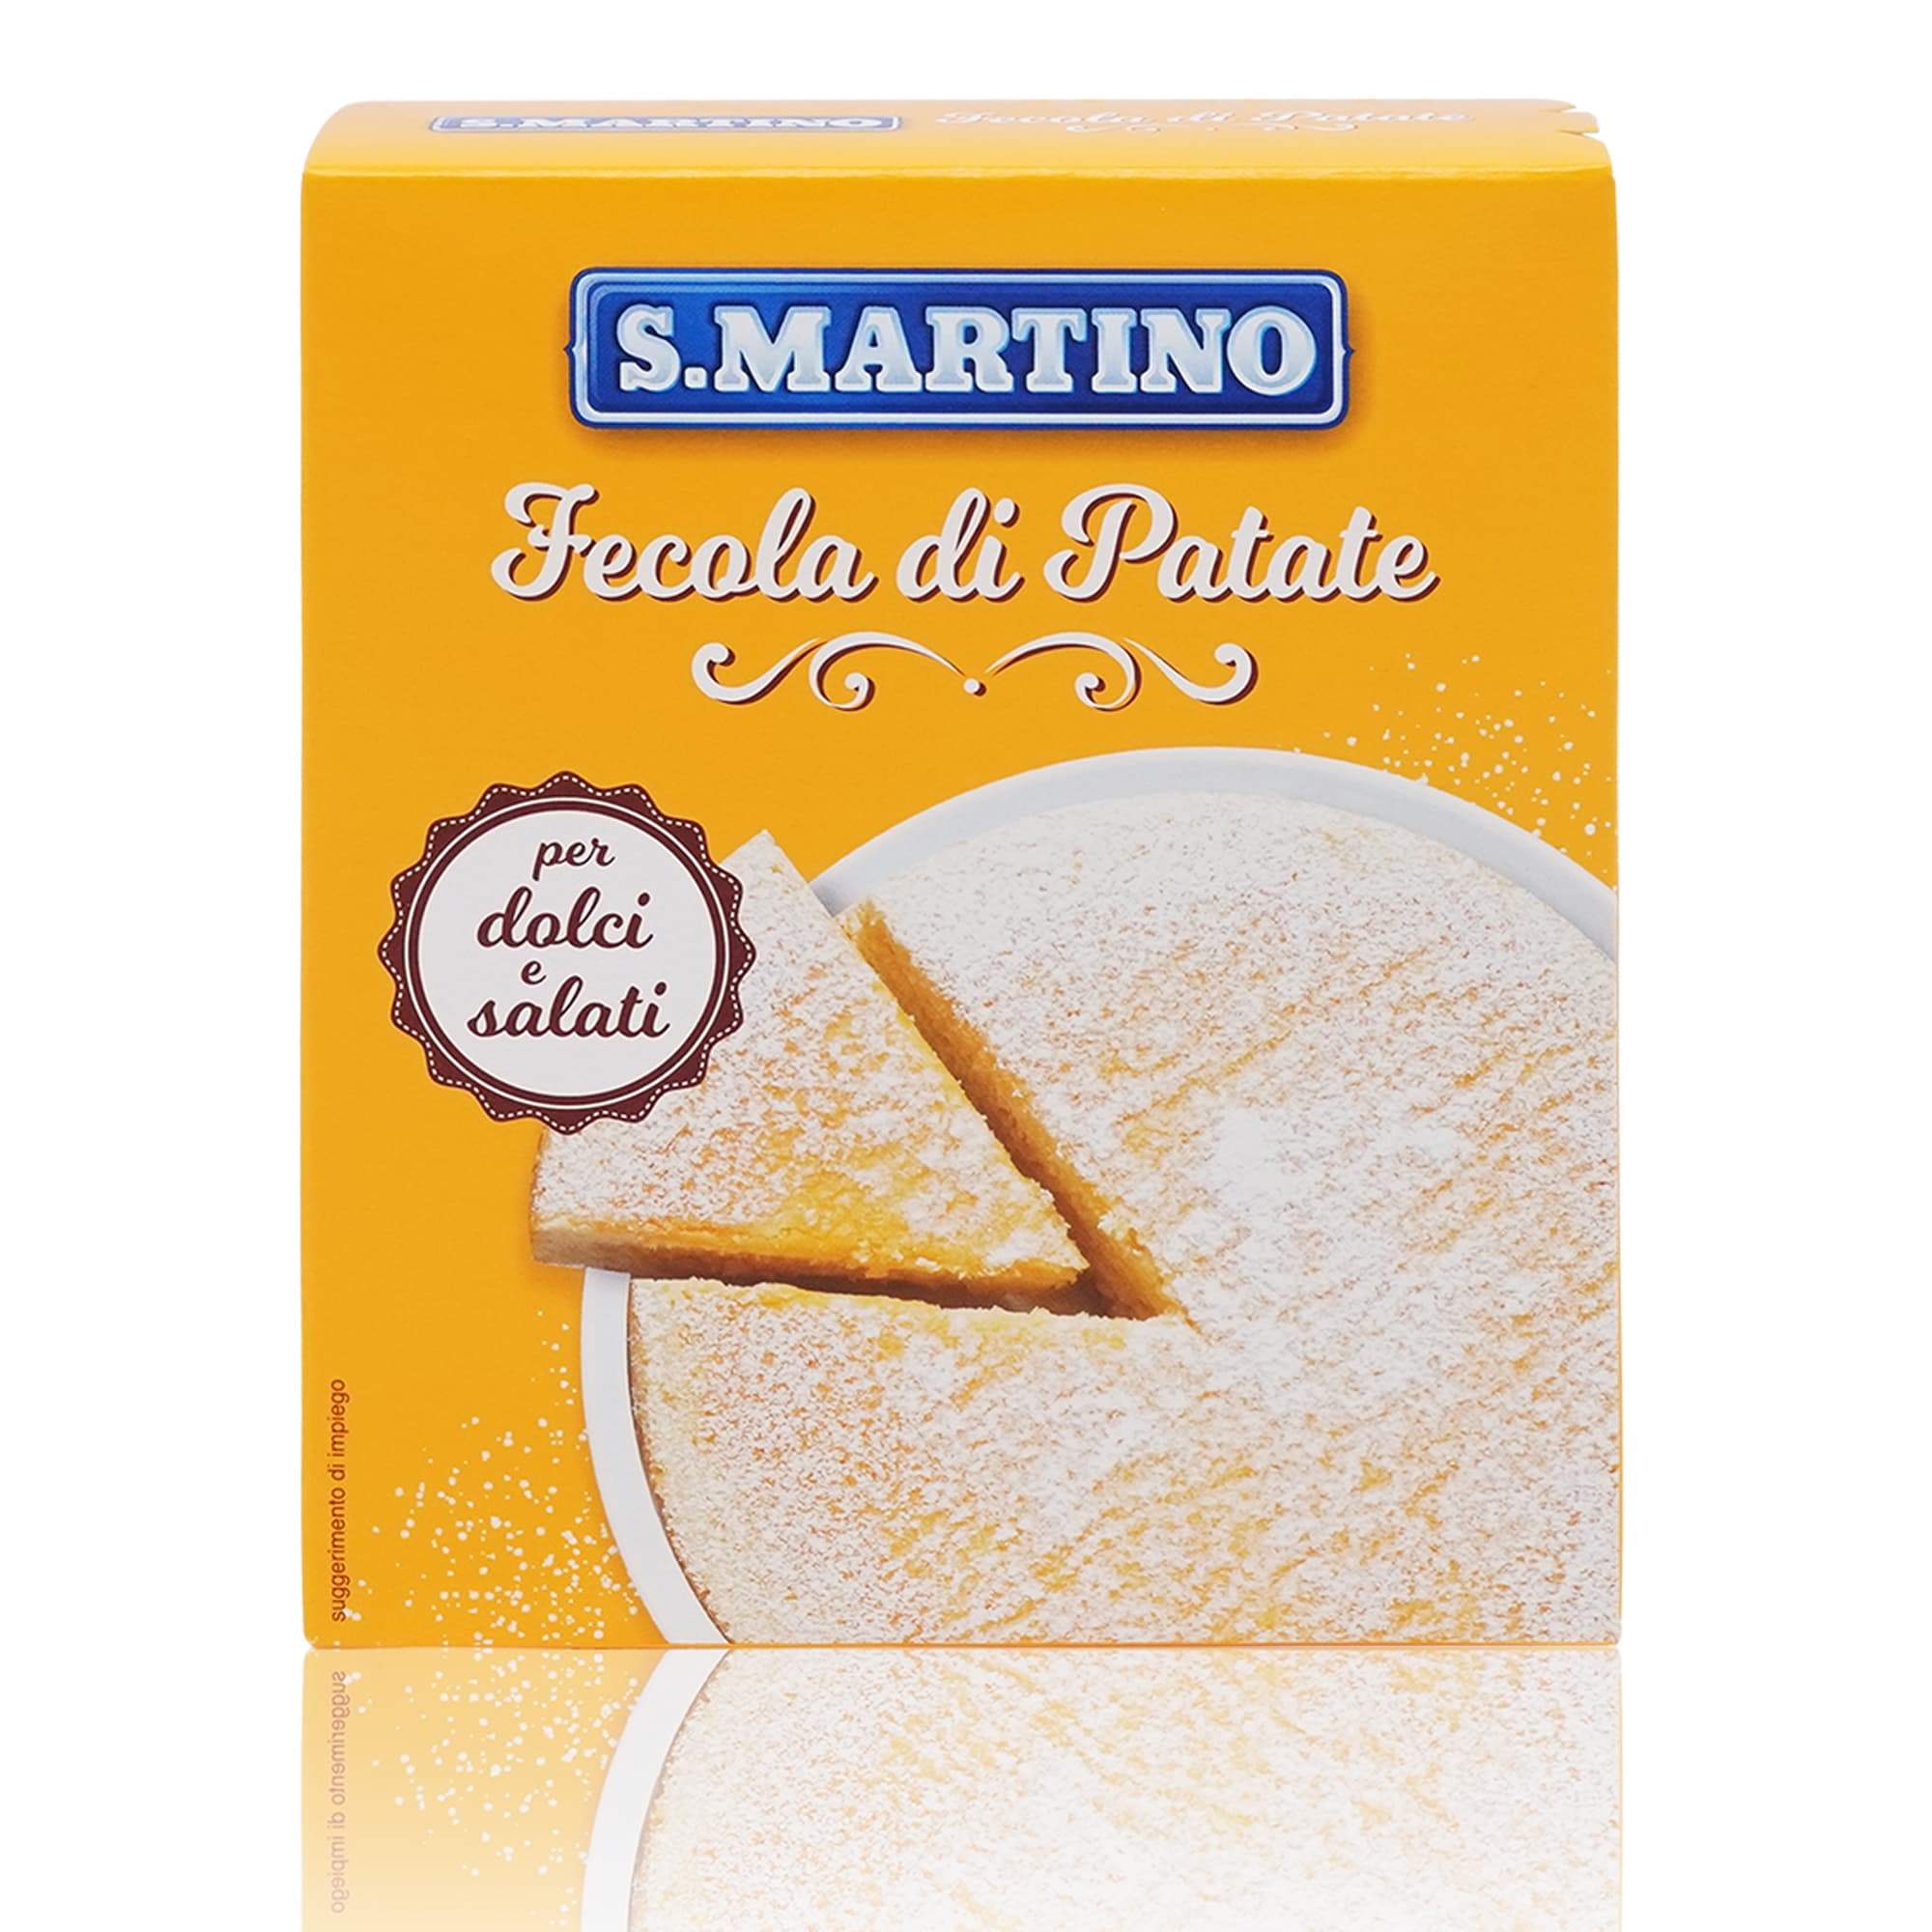 S.MARTINO Fecola di patate – Kartoffelstärke - 0,250kg - italienisch-einkaufen.de